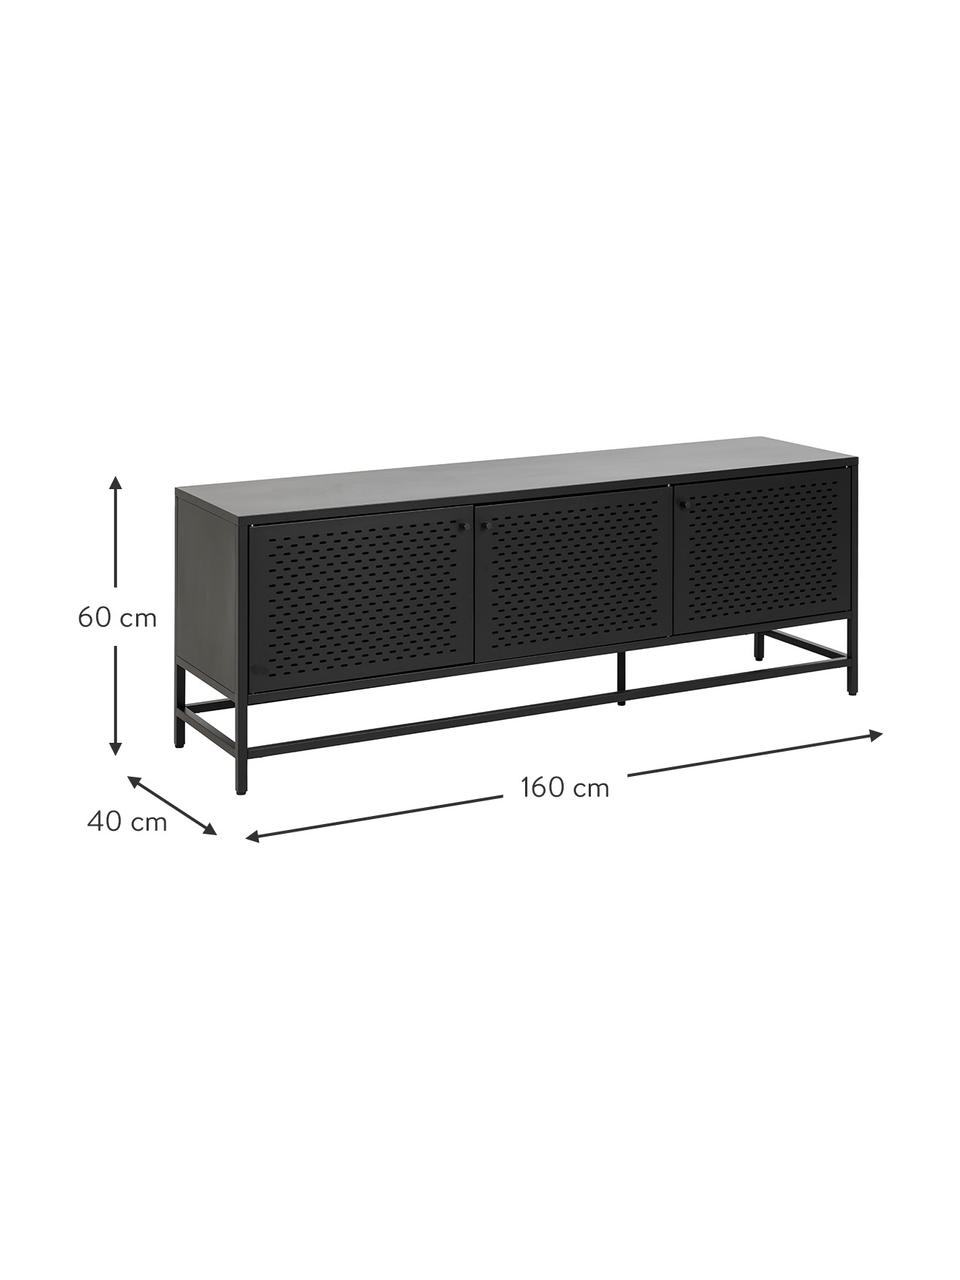 Metalen tv-meubel Neptun met deuren in zwart, Gecoat metaal, Zwart, B 160 cm x H 60 cm